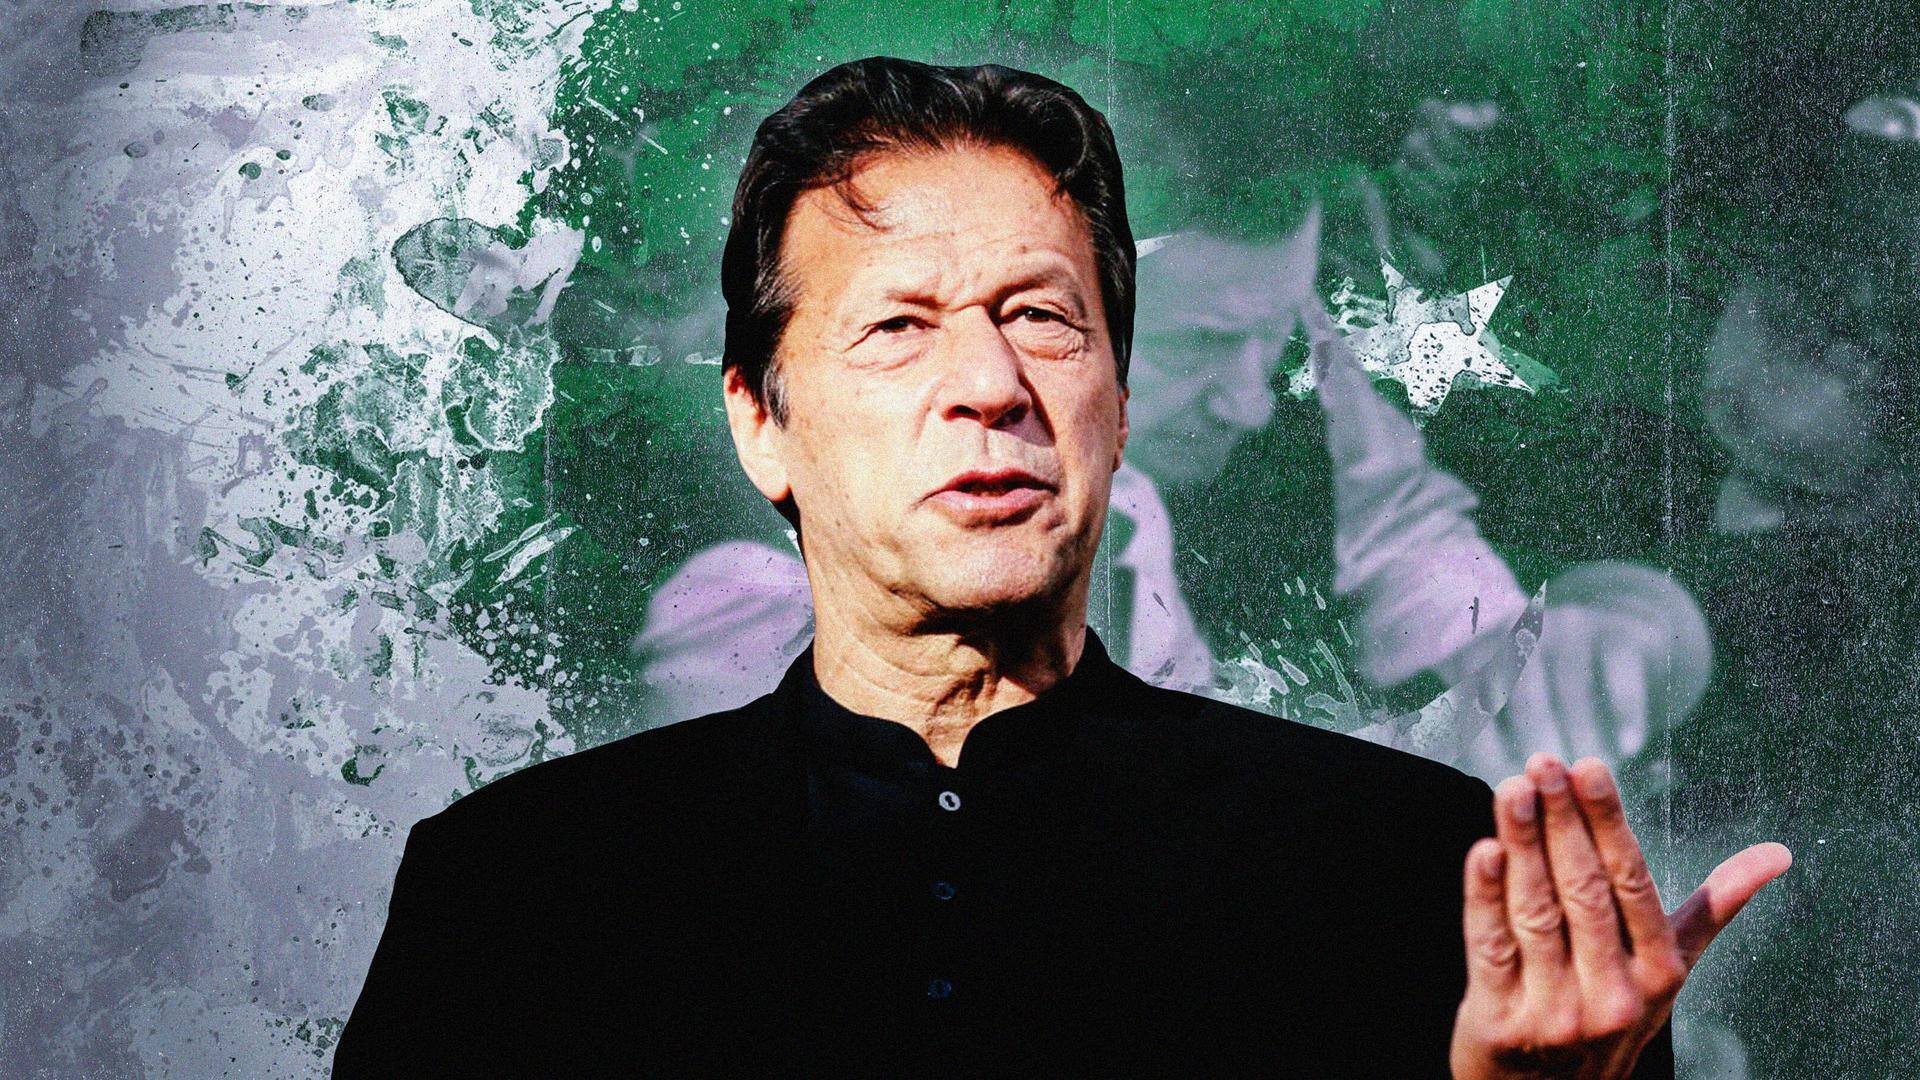 Pakistan: Former Prime Minister Imran Khan arrested in corruption case